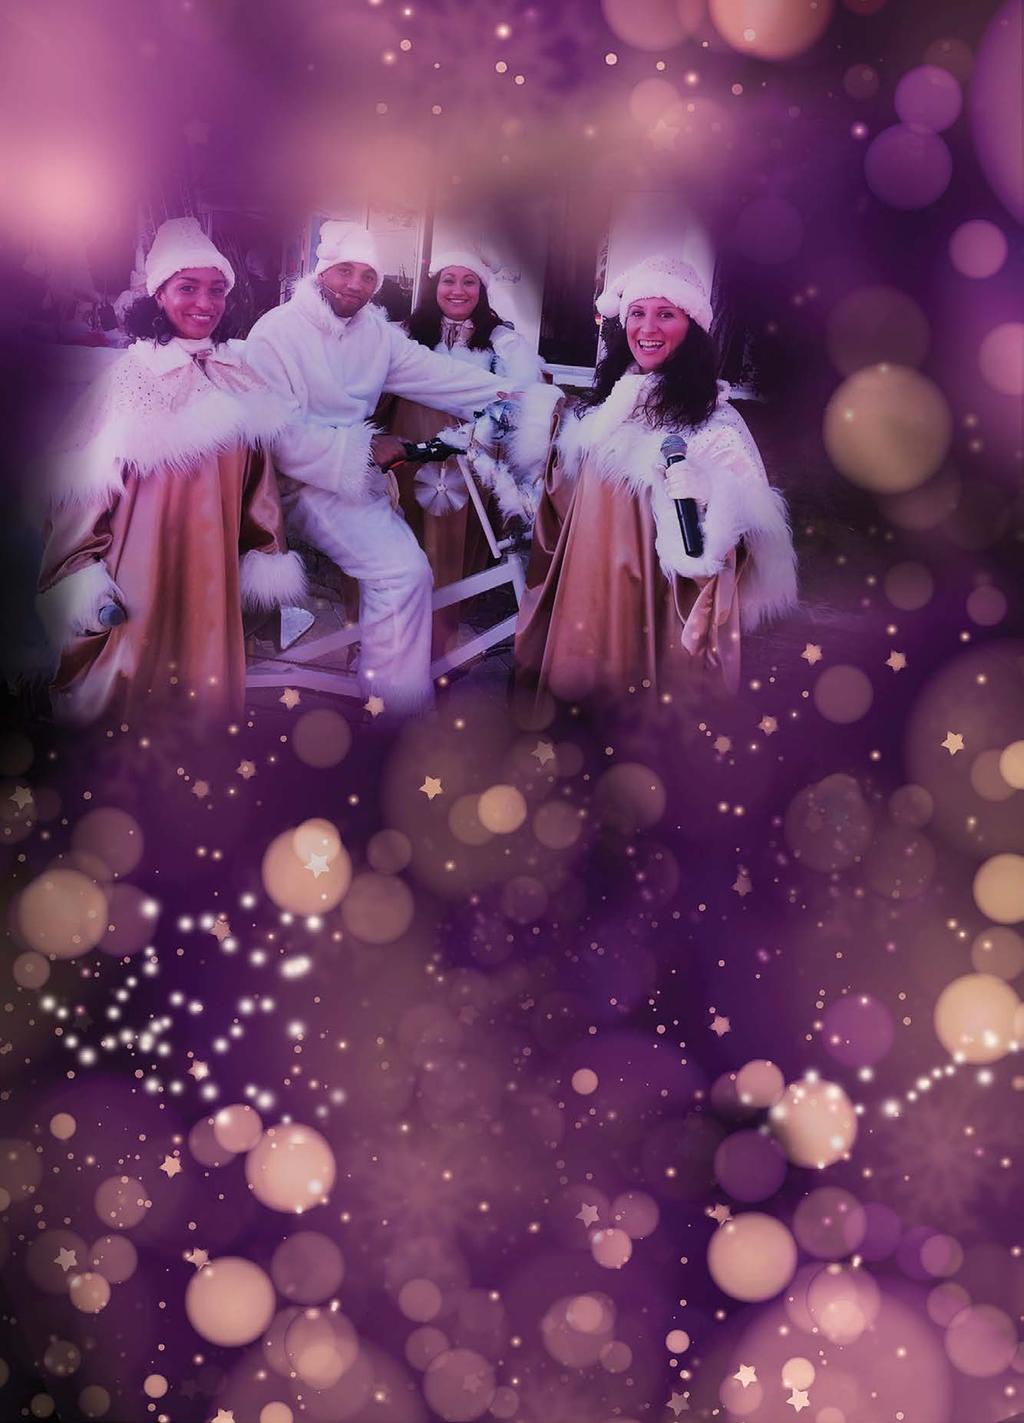 Mardi 20 & Samedi 24 11H - 17H Joyfully Gospel et le tripode de Noël 4 chanteurs en costume gospel de Noël déambuleront en tripode dans les rues de Brignoles.